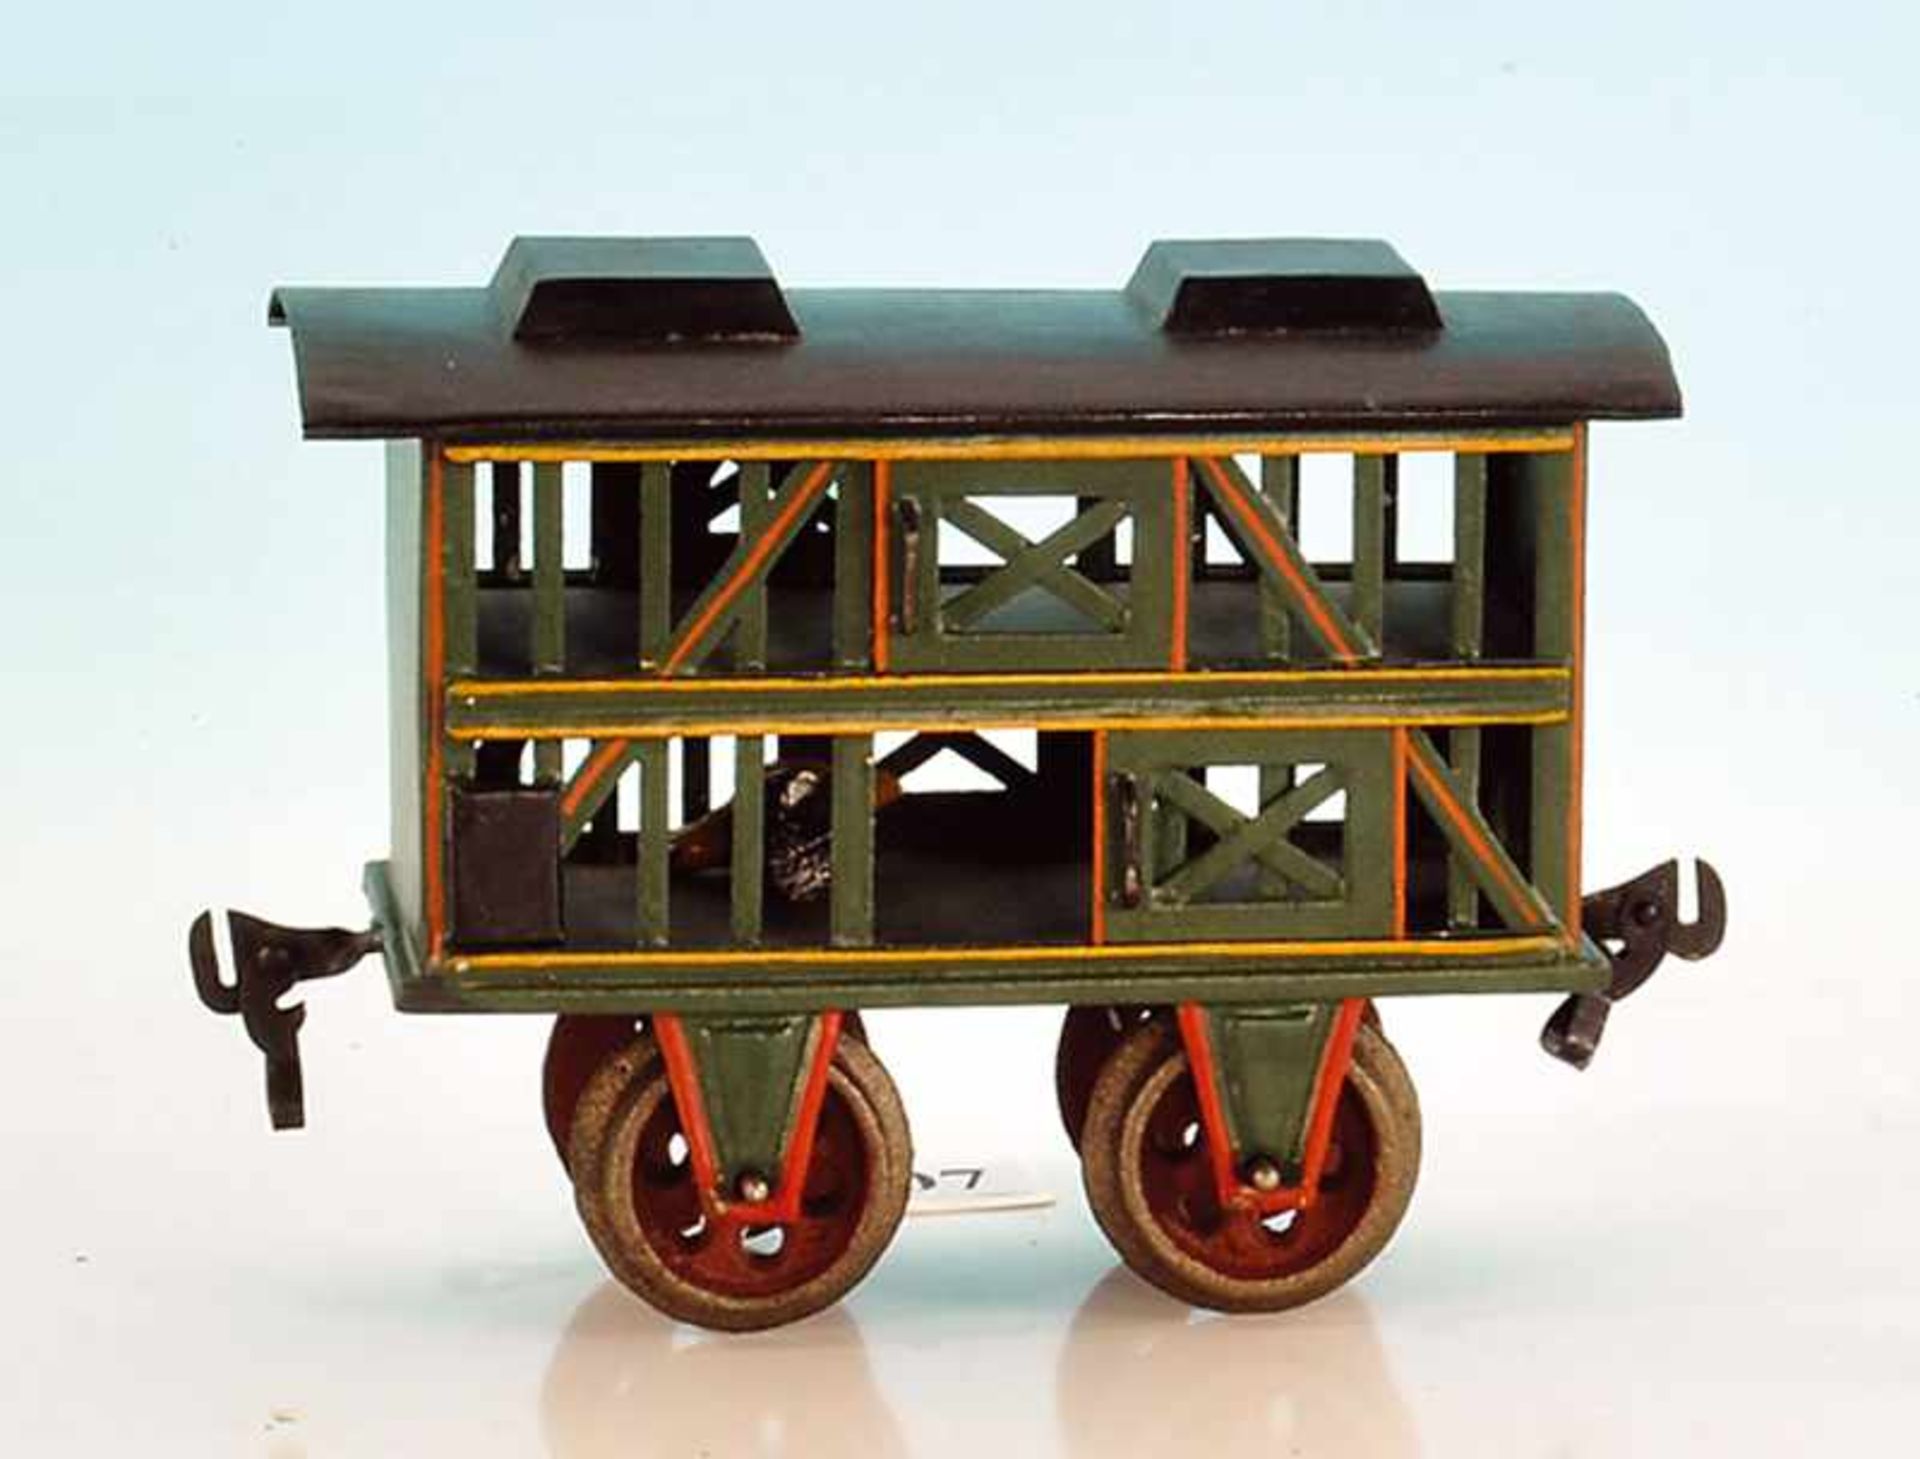 MÄRKLIN Kleintierwagen 1809/II - Spur II 14,5 cm, grün, Dach schwarz, Gusslochspeichenräder, der